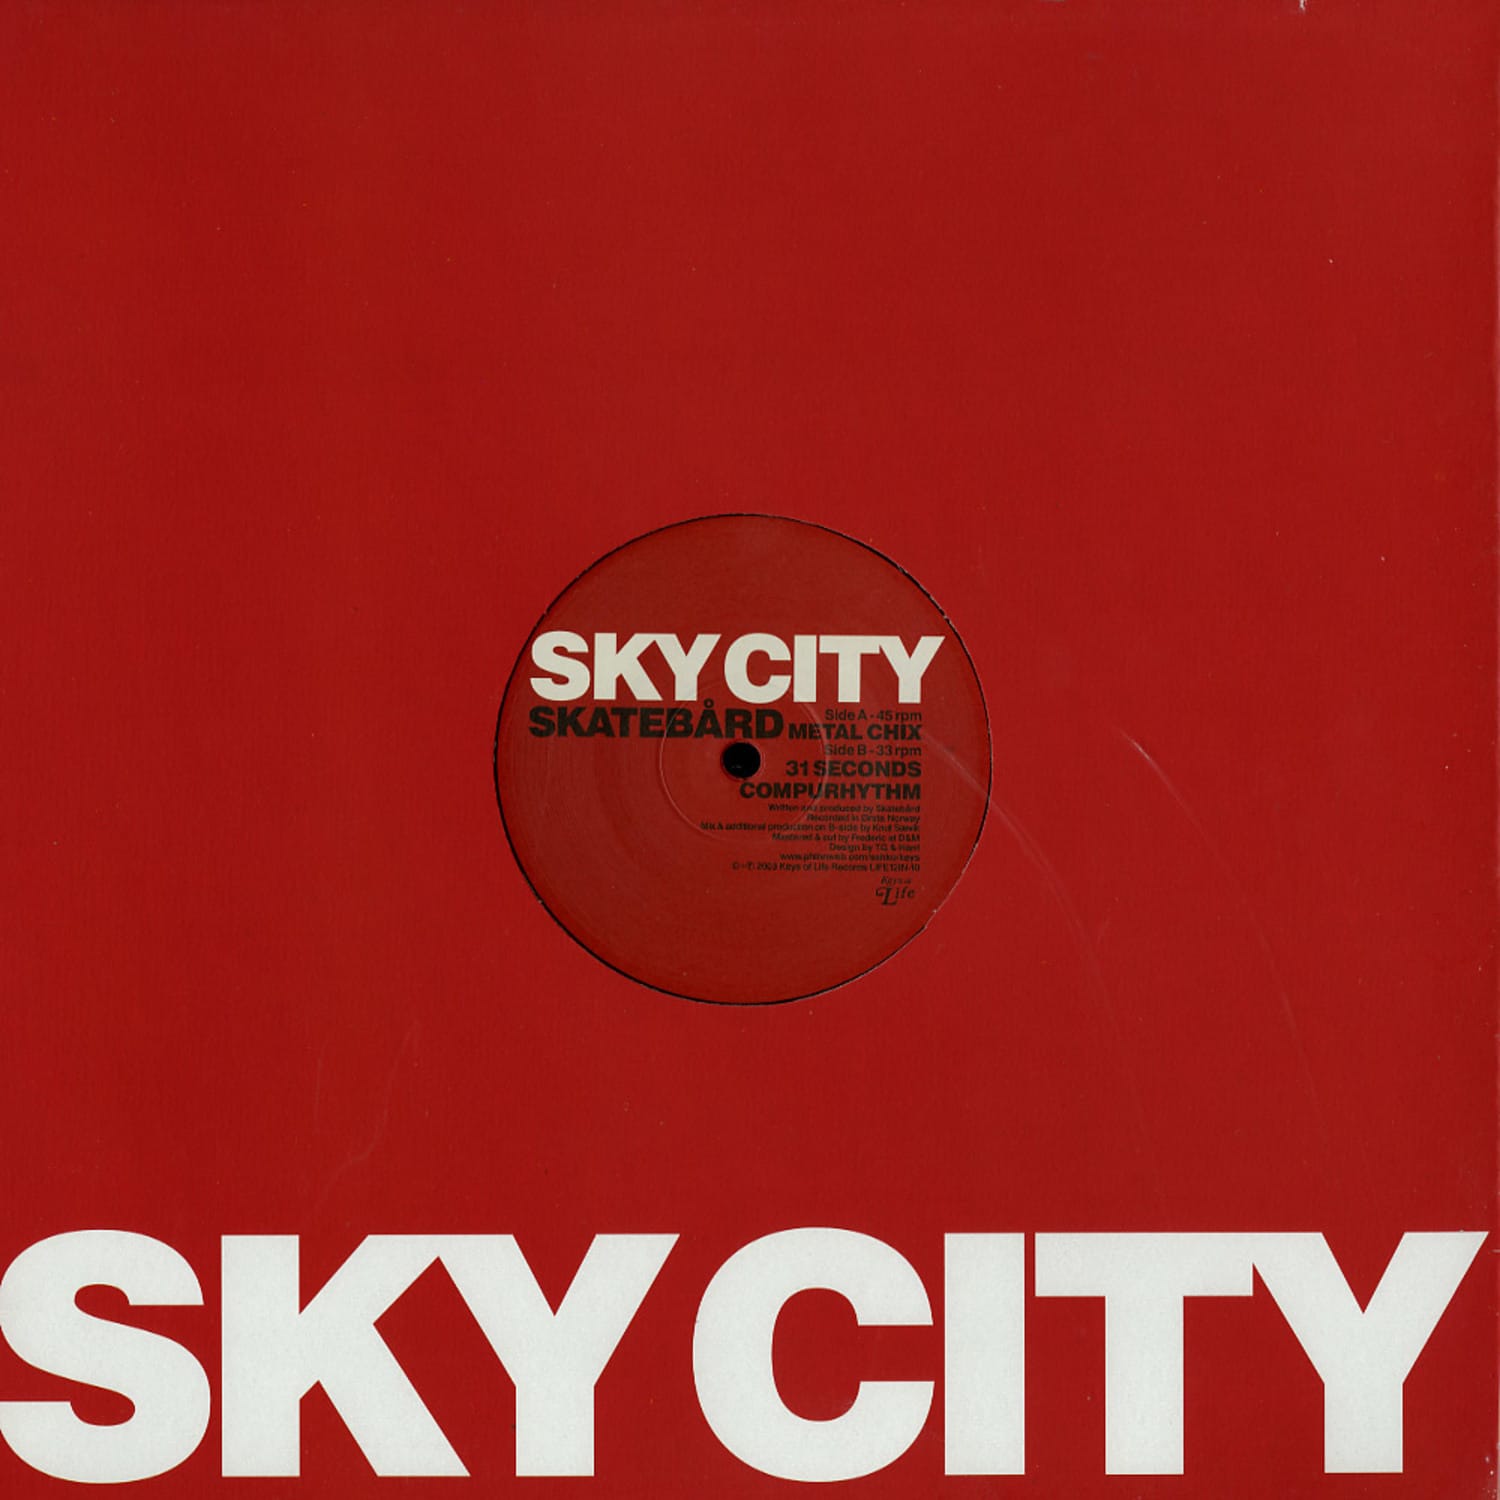 Skatebard - SKY CITY